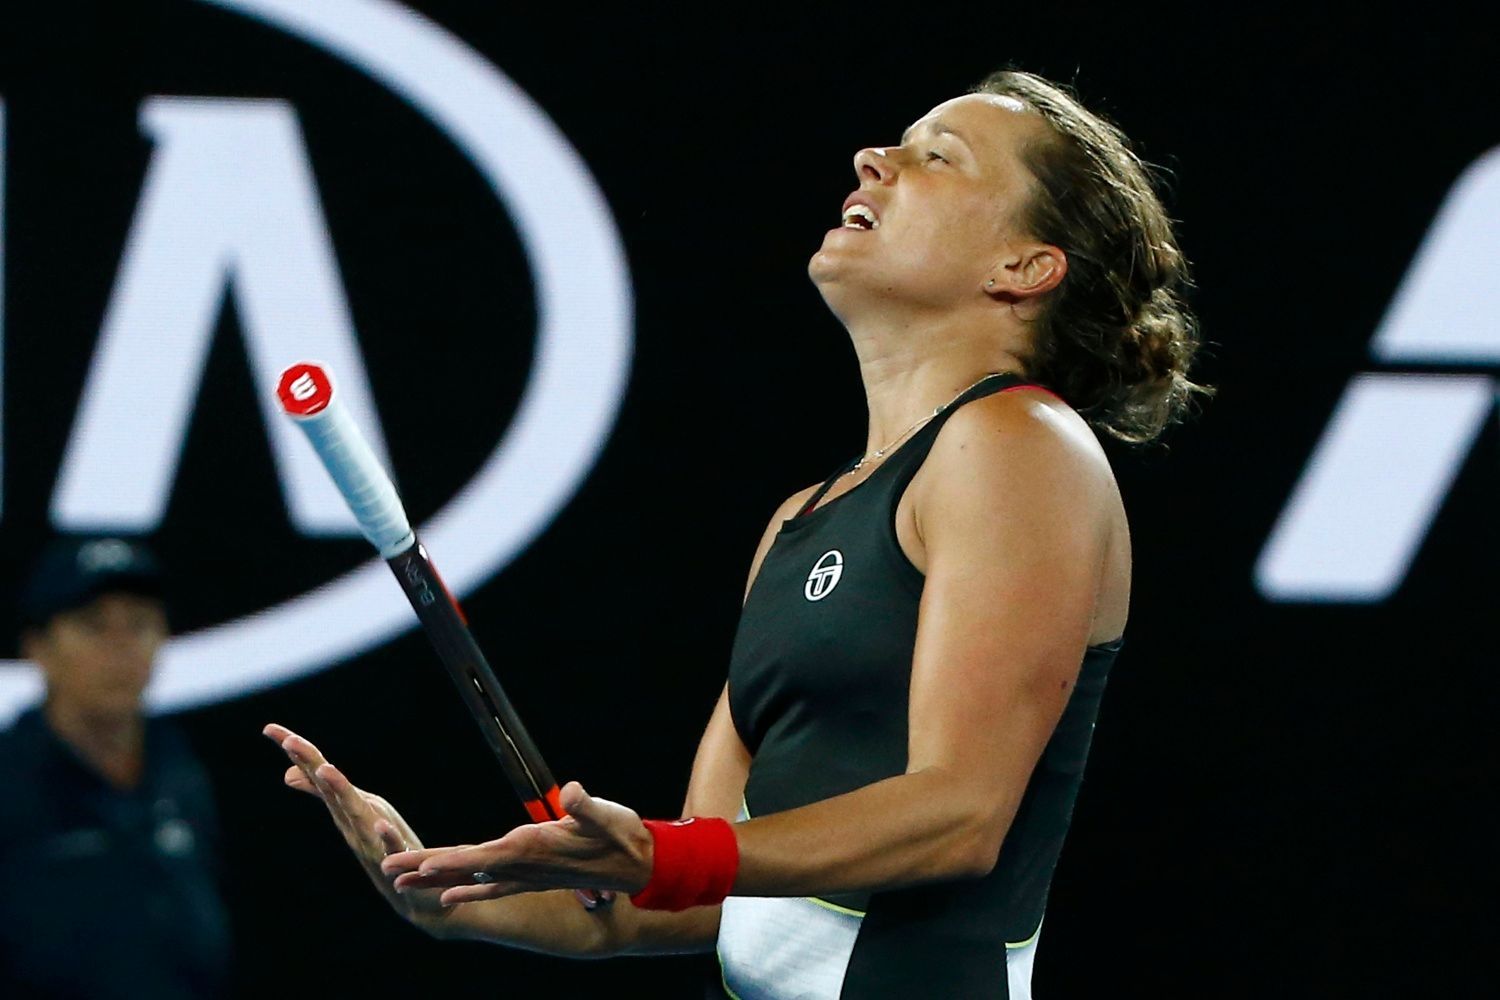 Barbora Strýcová v osmifinále Australian Open 2018